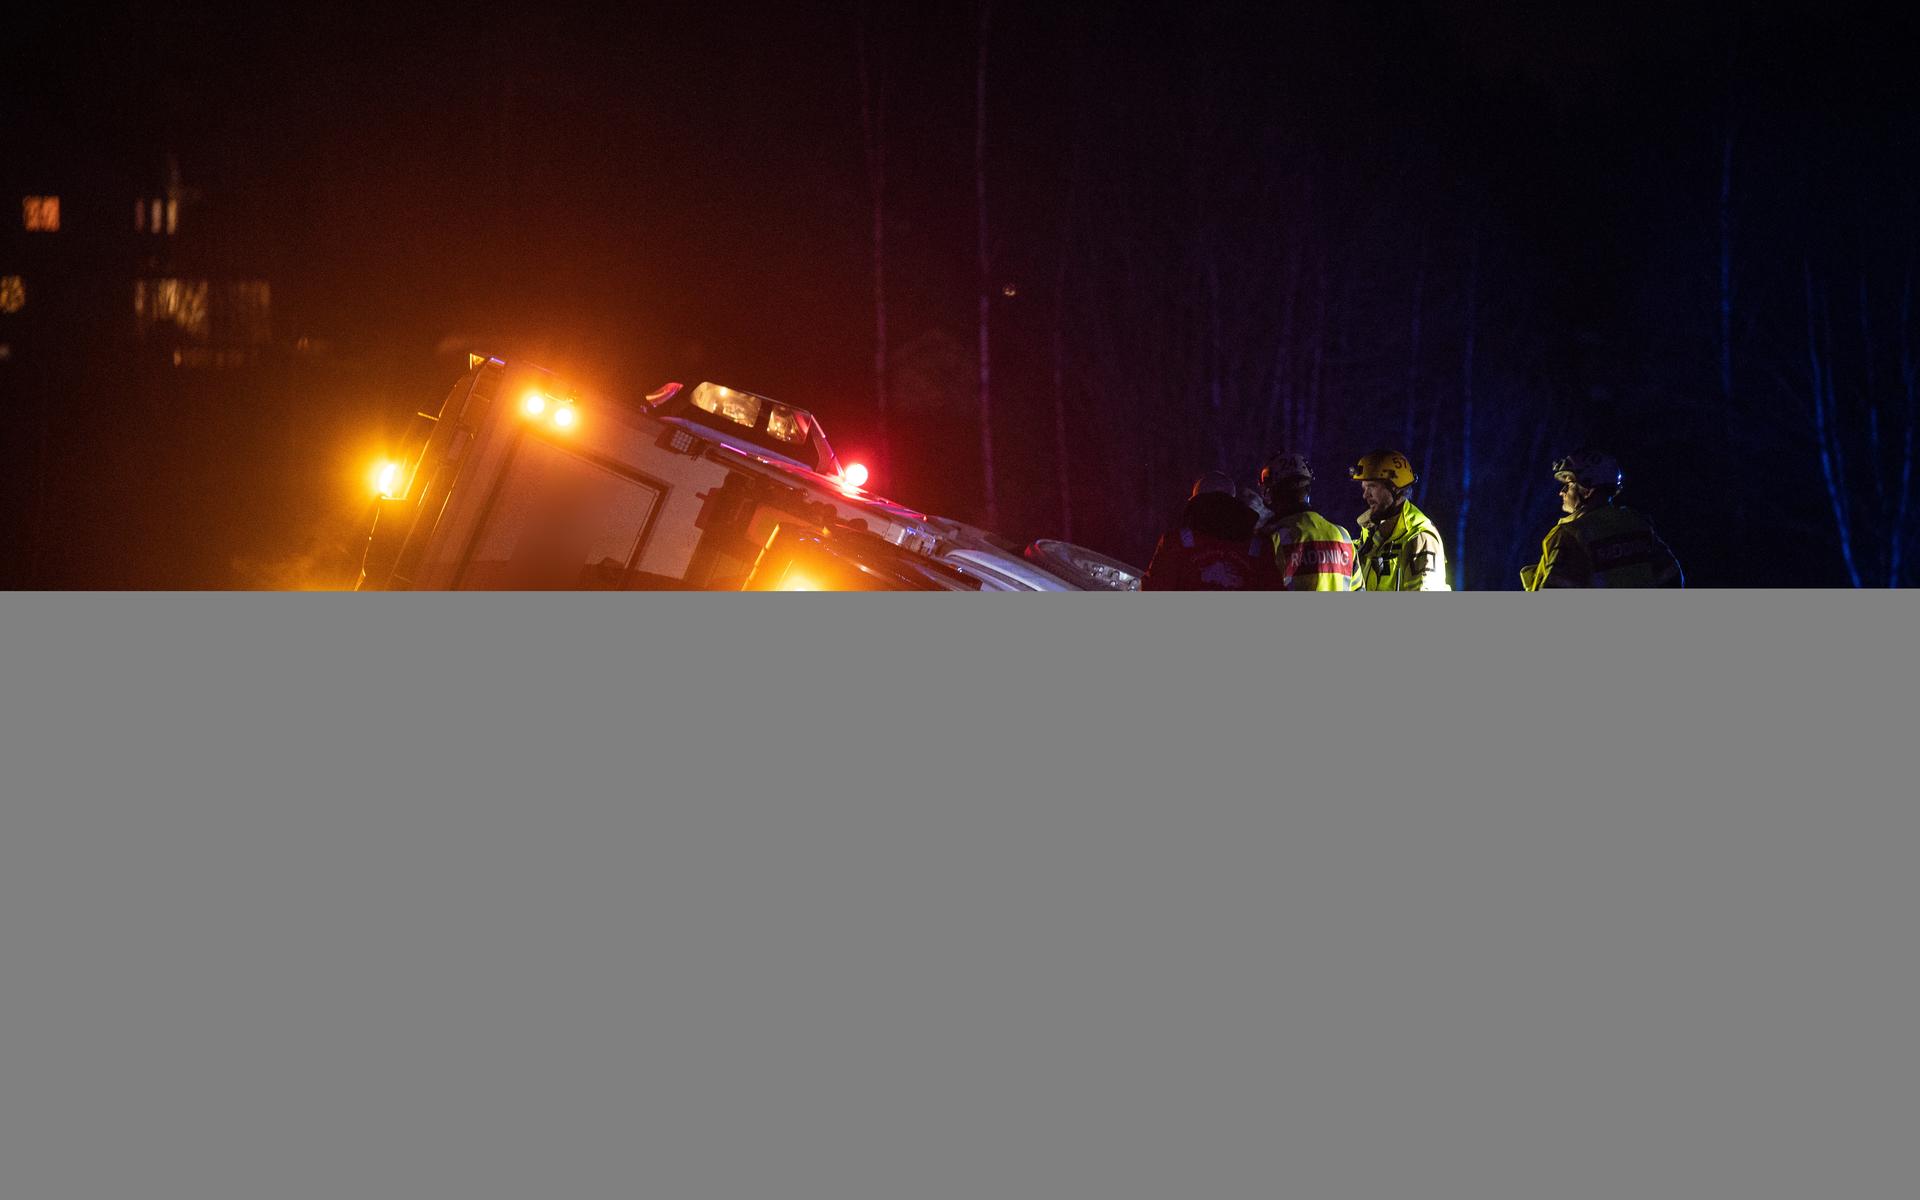 Strax innan 21-tiden på fredagskvällen körde en lastbil av vägen i Uddevalla och hamnade på sidan i dike. 